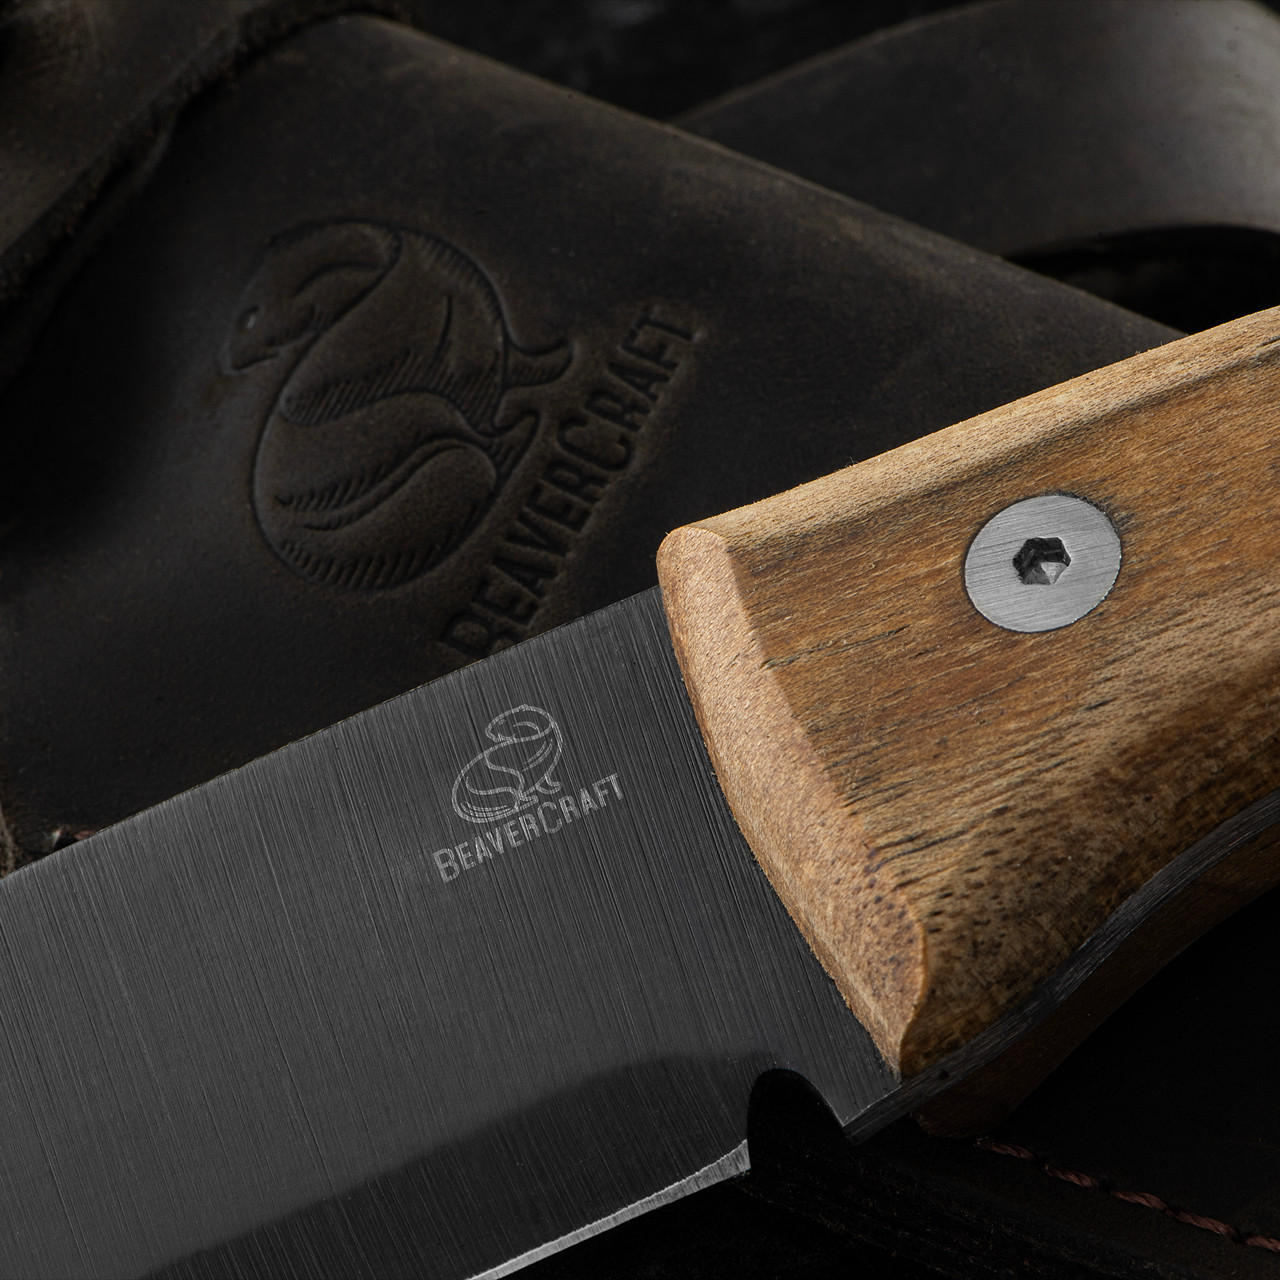 BeaverCraft Bushcraft Knife Full Tang with Leather Sheath Fixed